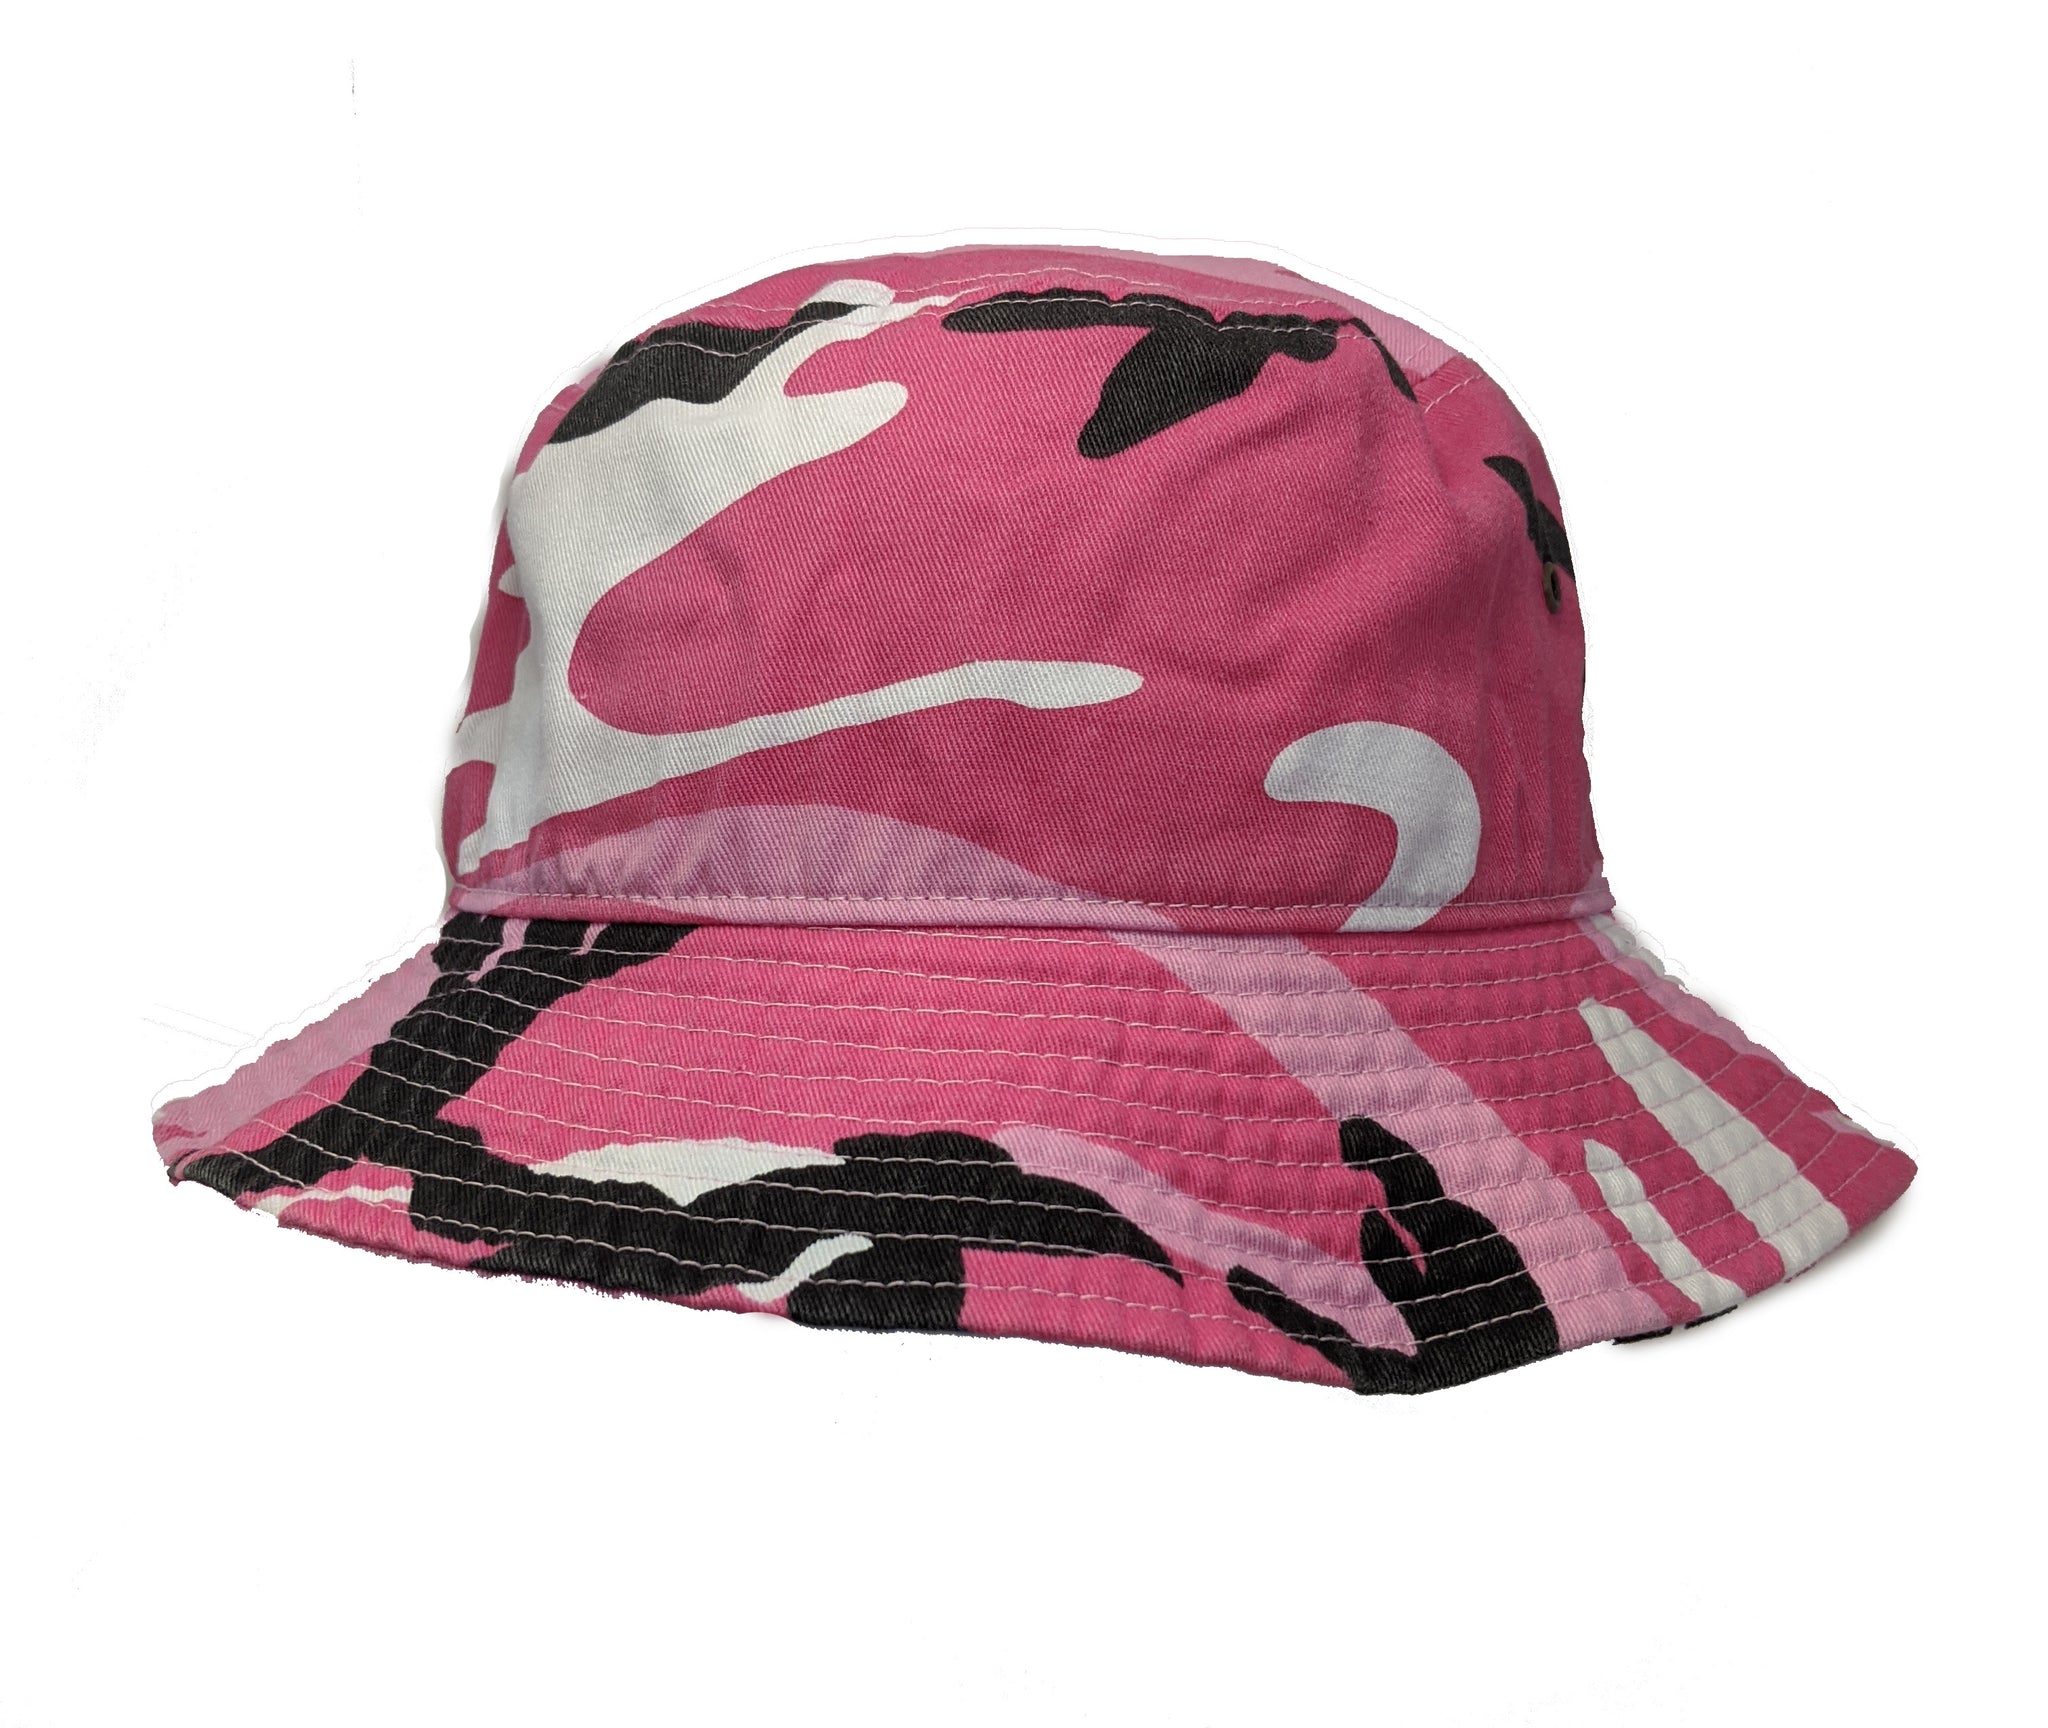 Camo Bucket Hat #1500 – Aion Amor